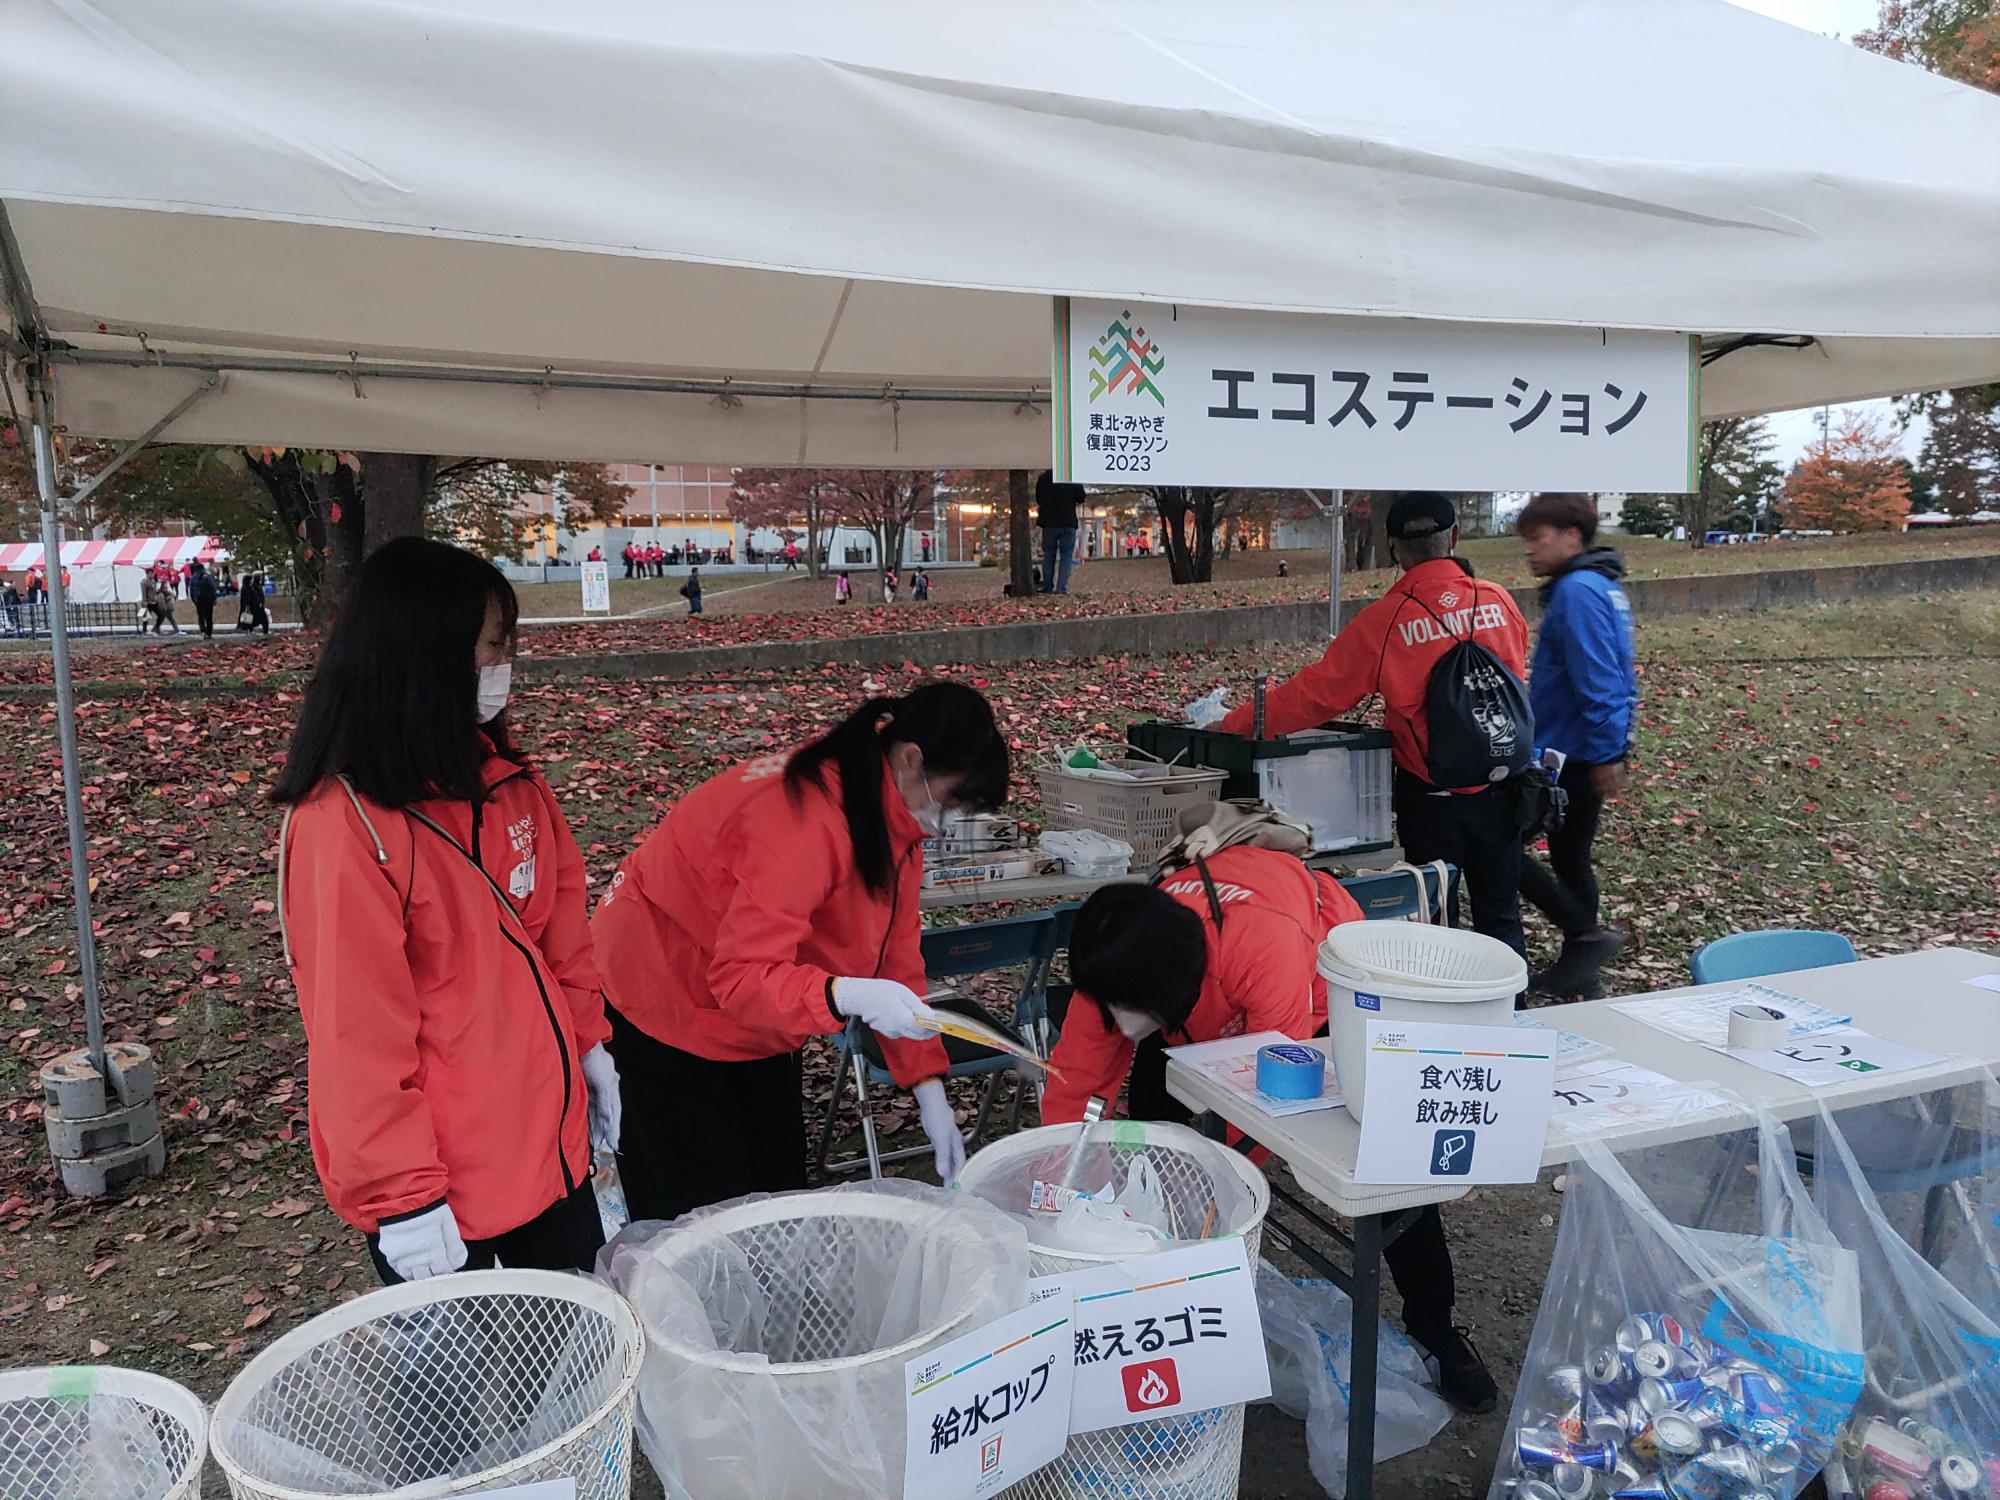 エコステーションでは、ゴミの分別を参加者に促し、集まったゴミを手際よくまとめ、周囲を清潔な環境に保ちました。